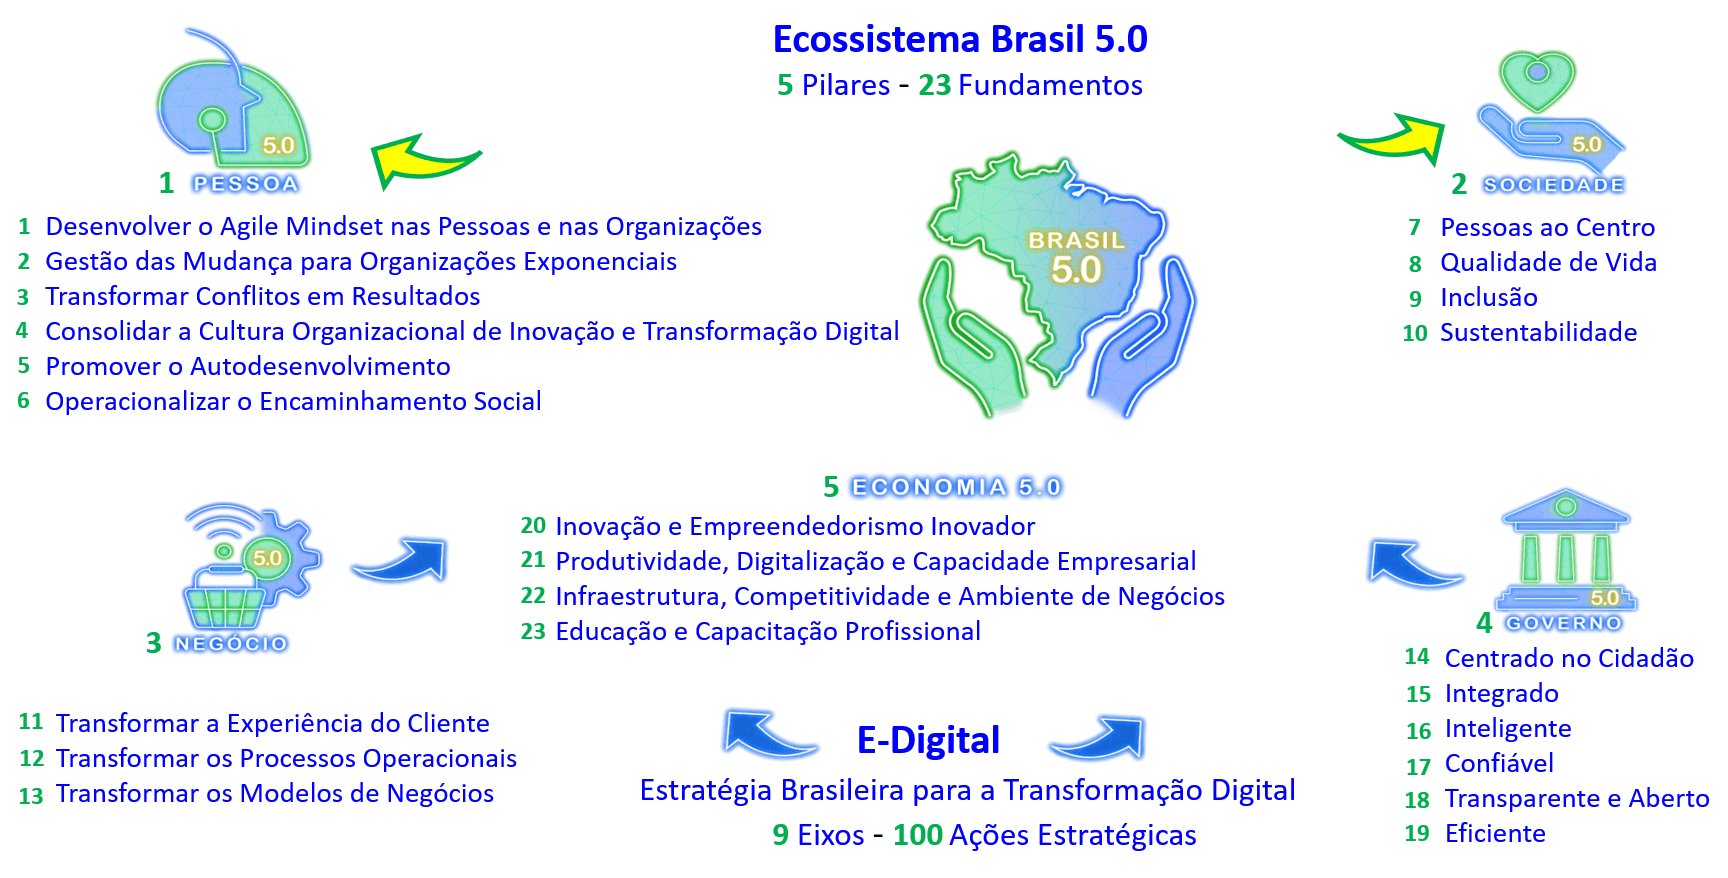 Ecossistema Brasil 5.0 - Pilares e Fundamentos